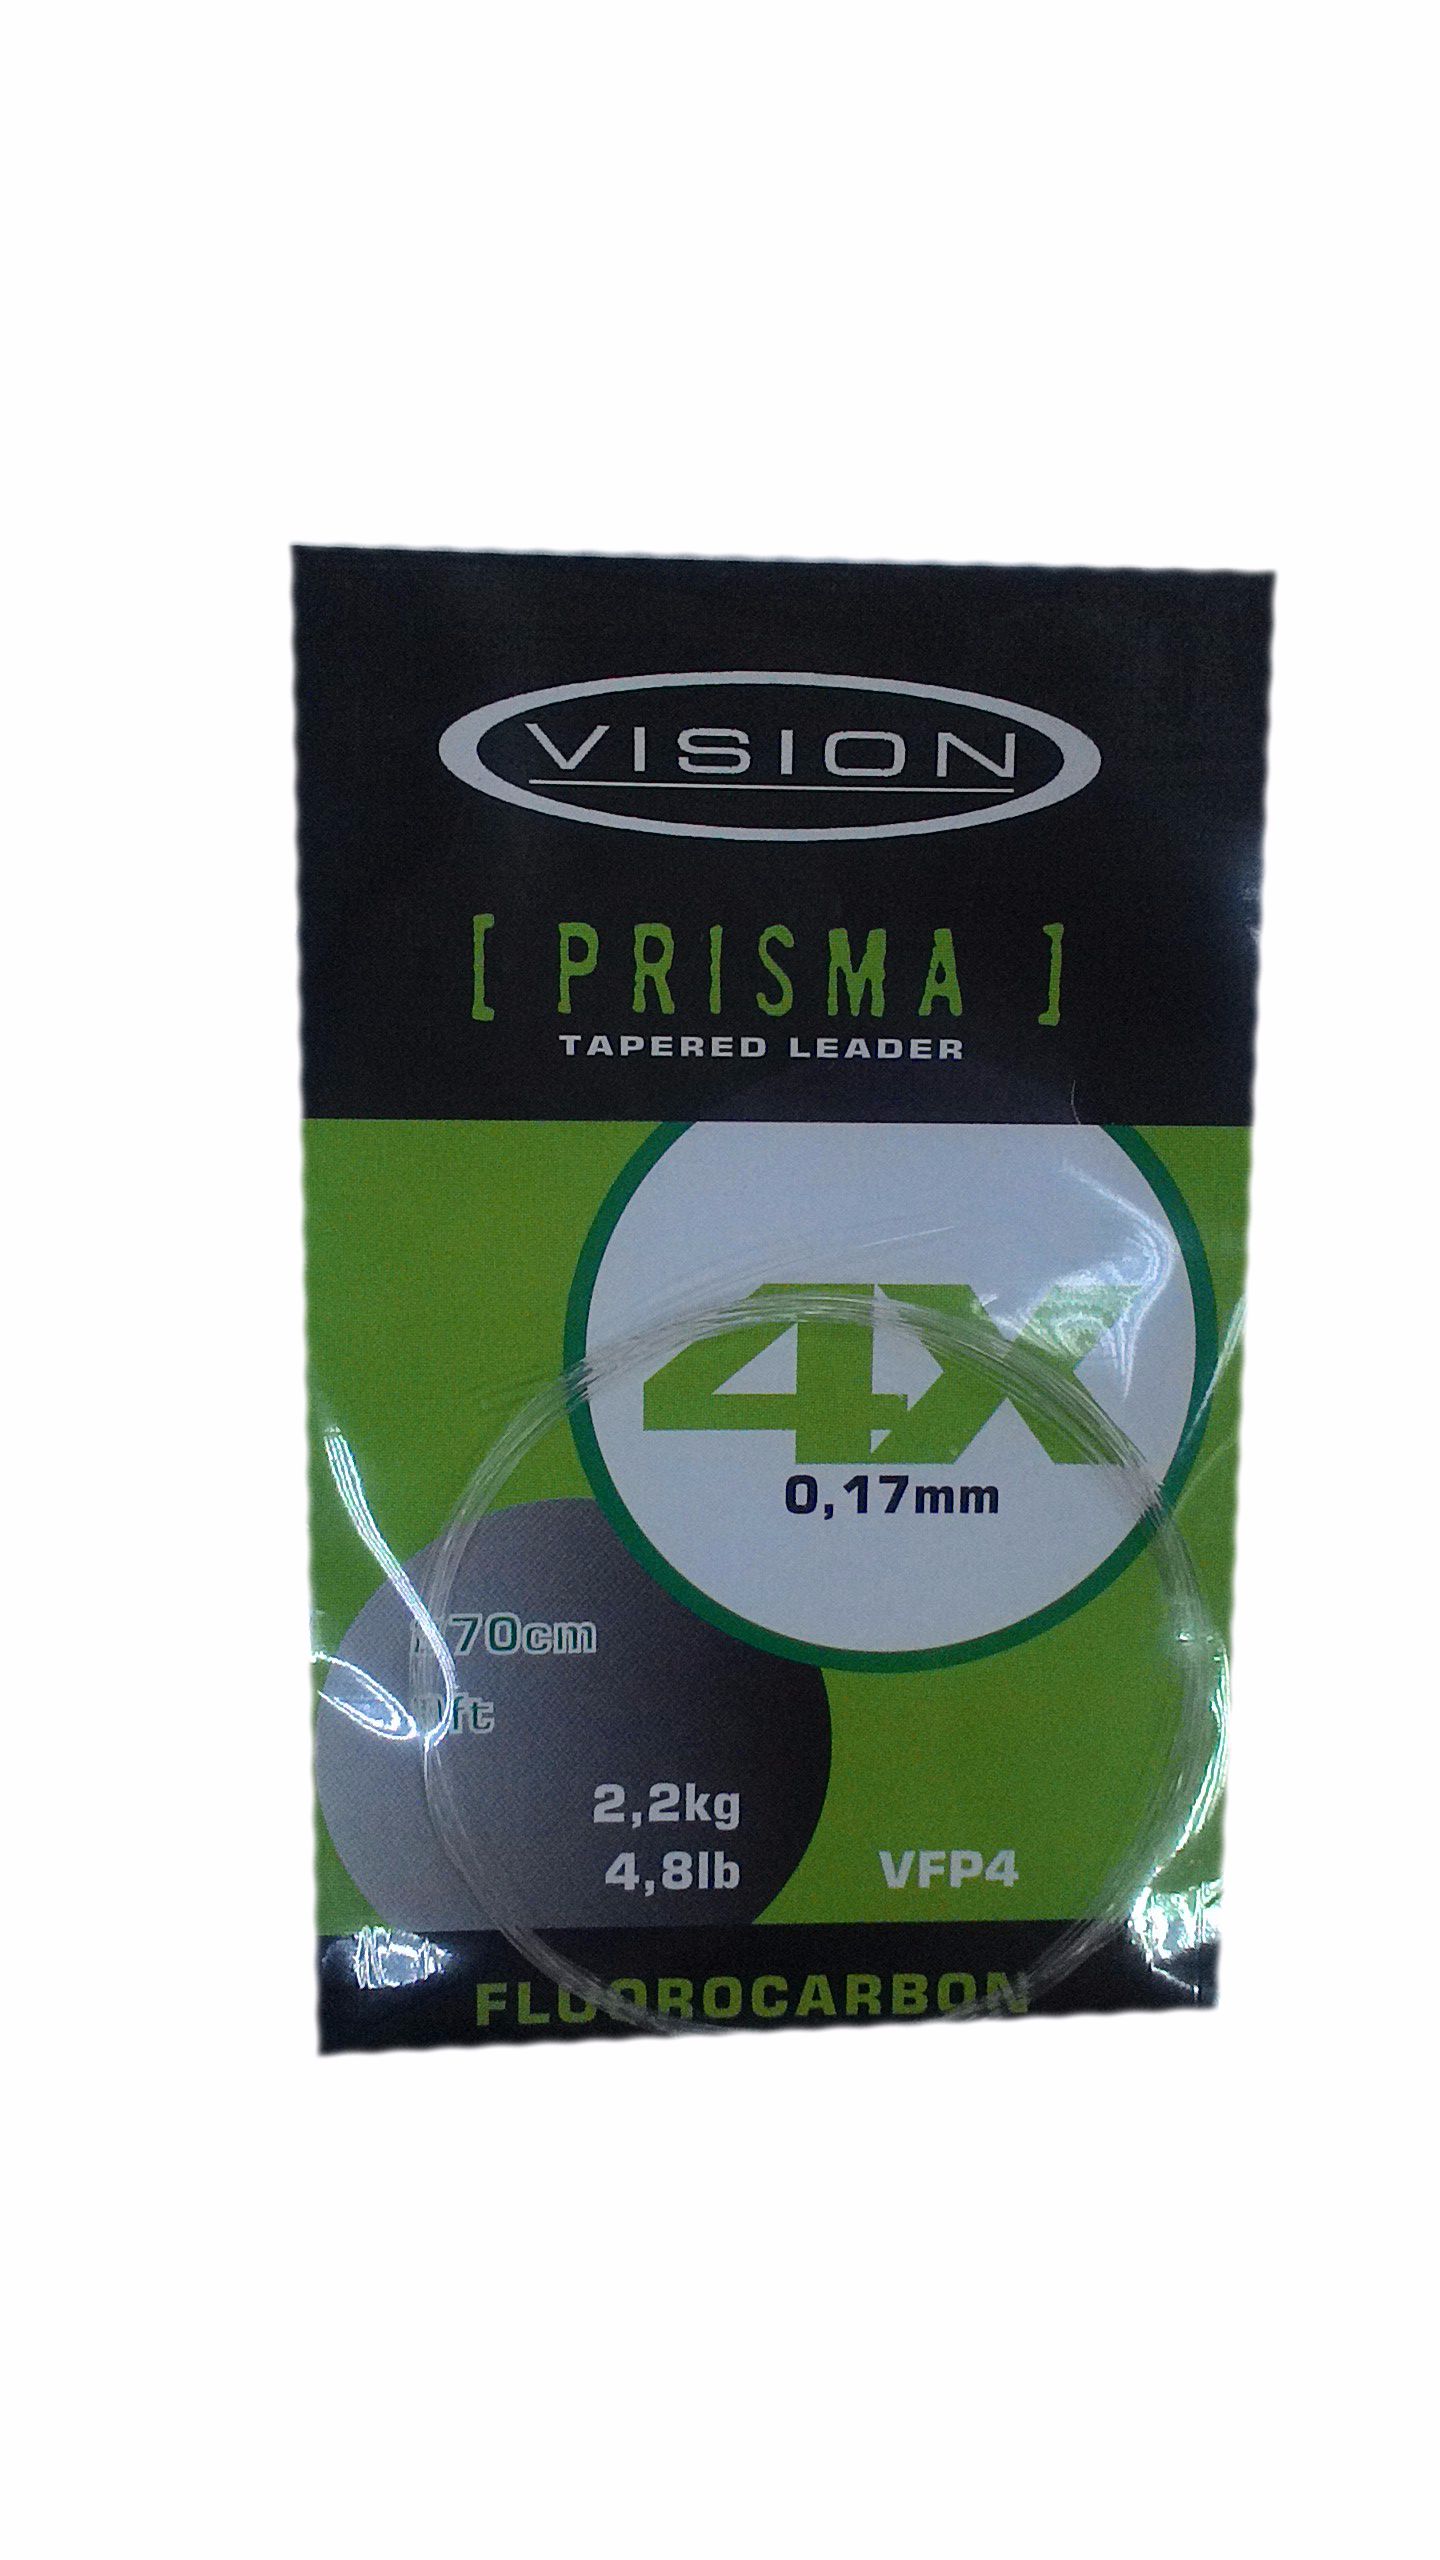 Подлесок Vision Prisma fluorocarbon rader 4X - фото 1